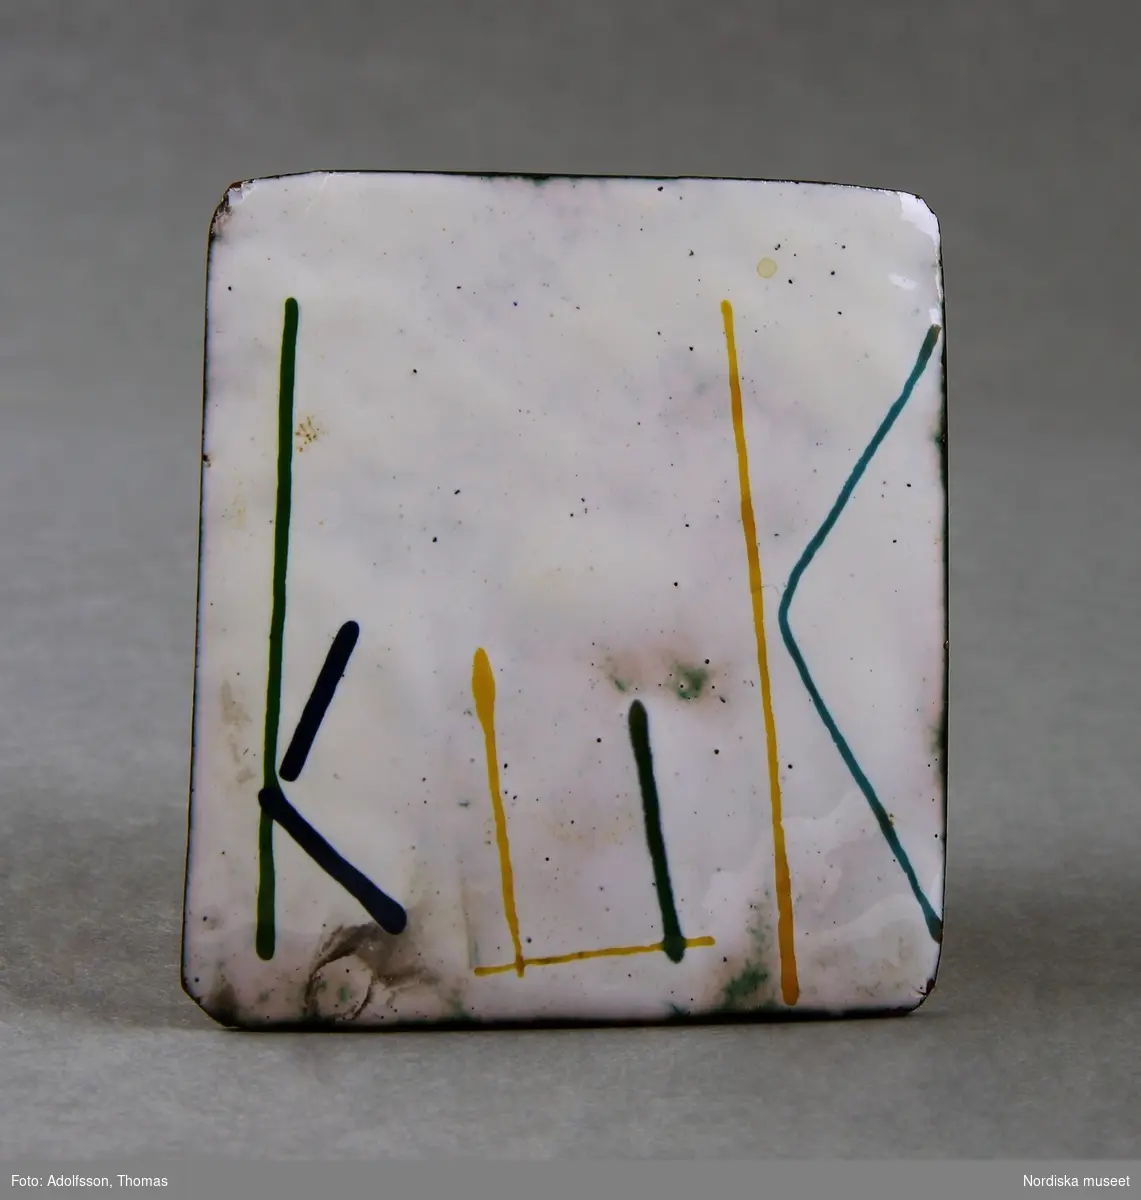 Kvadratisk brosch i metall, på baksidan fastlödd nål med lås. Framsidan emaljerad, vit bottenfärg, bokstäver i gult, blått och grönt bildande ordet "KUK".
/Fiffi Myrström, 2014-01-17.